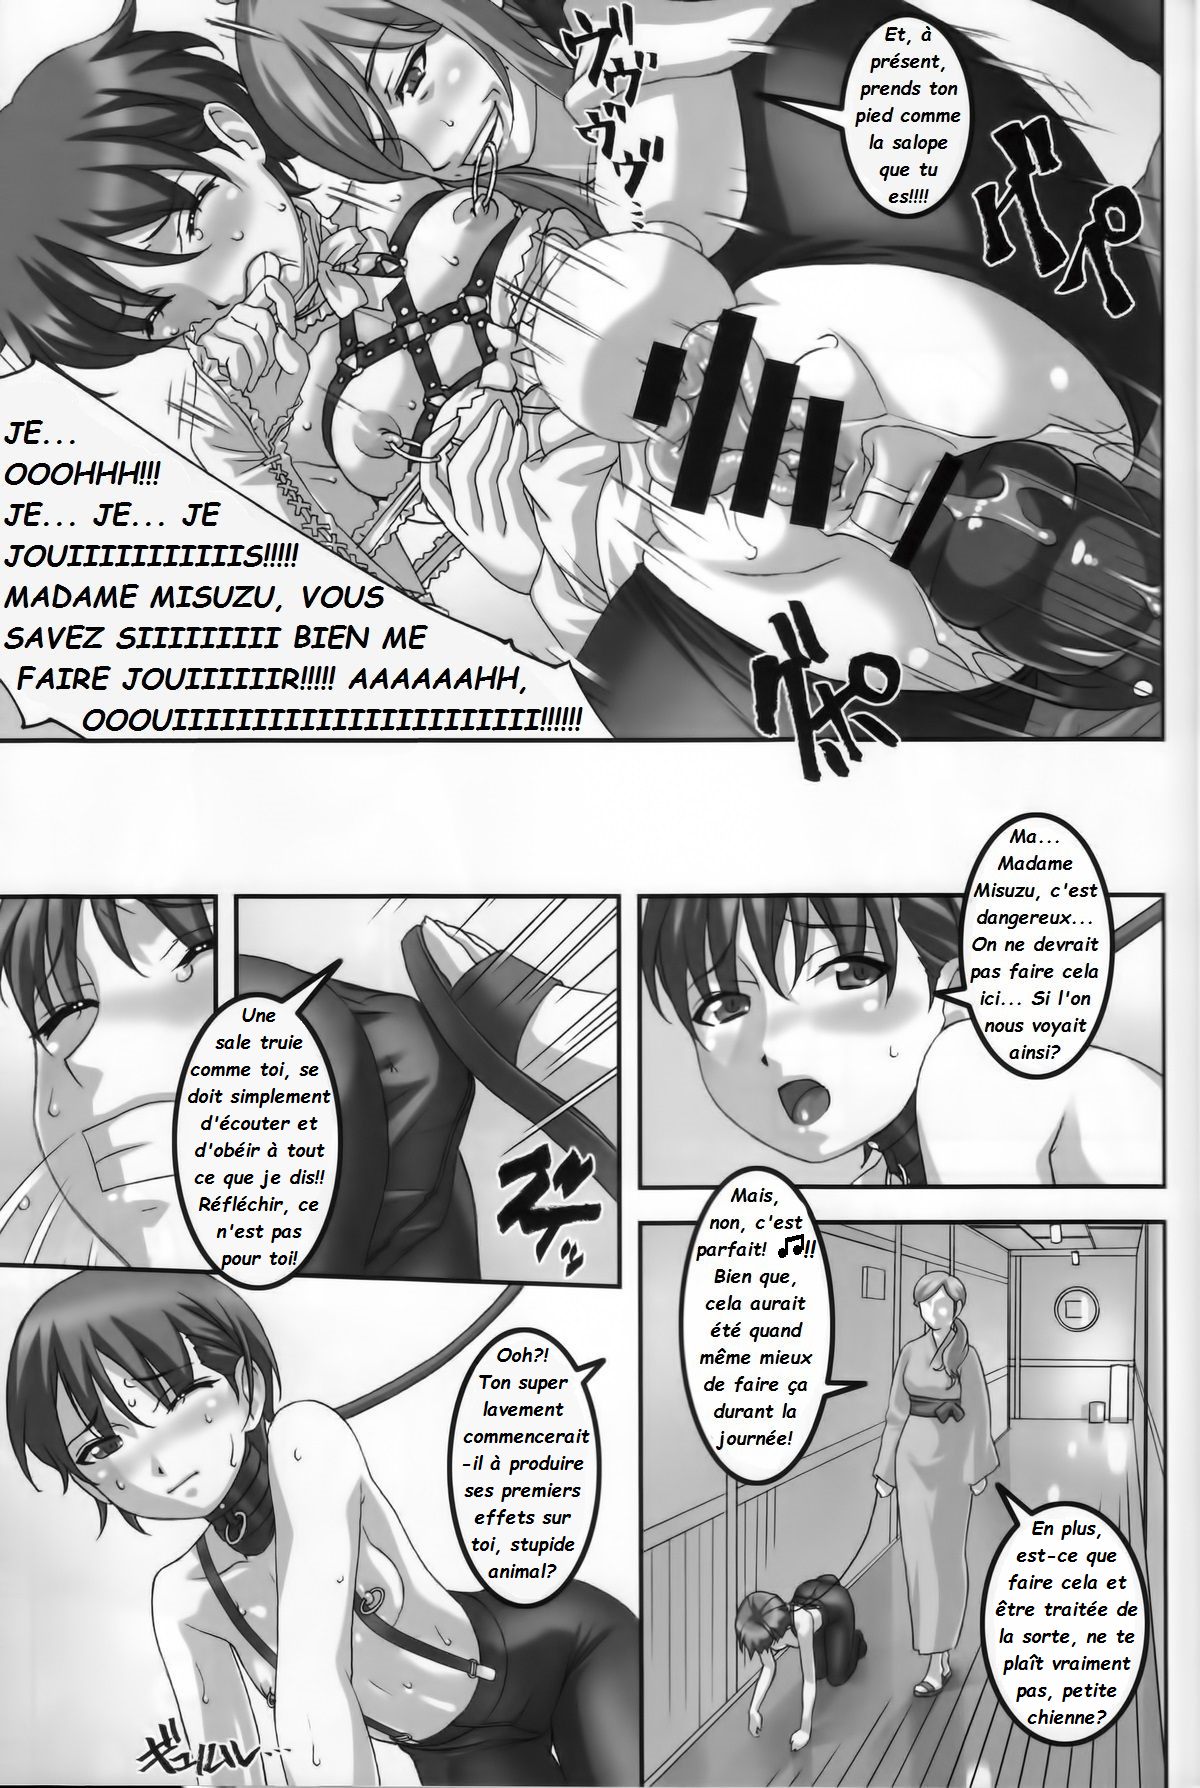 Anoko ga Natsuyasumi ni Ryokou saki de Oshiri no Ana wo Kizetsu suru hodo Naburare tsuzukeru Manga  La jeune Rei et sa nounou Misuzu. Volume 2 numero d'image 16